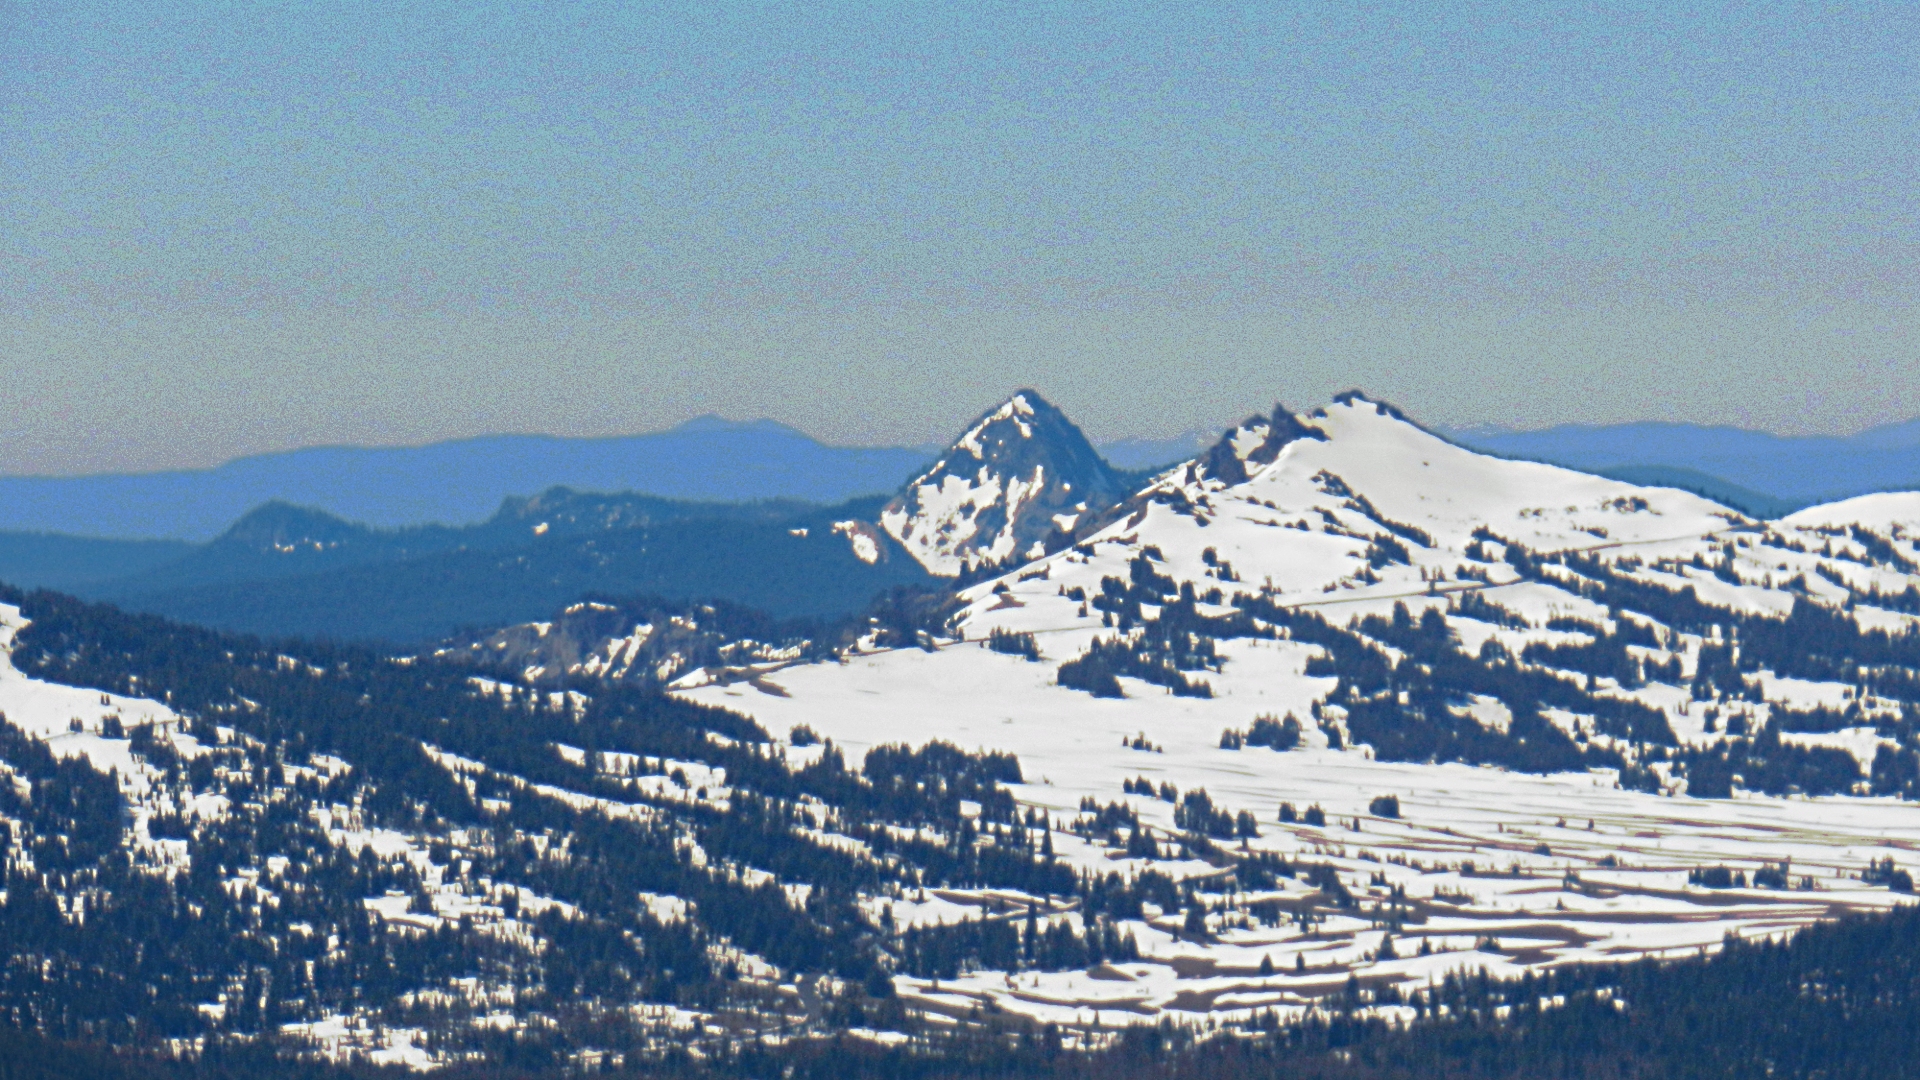 Union Peak